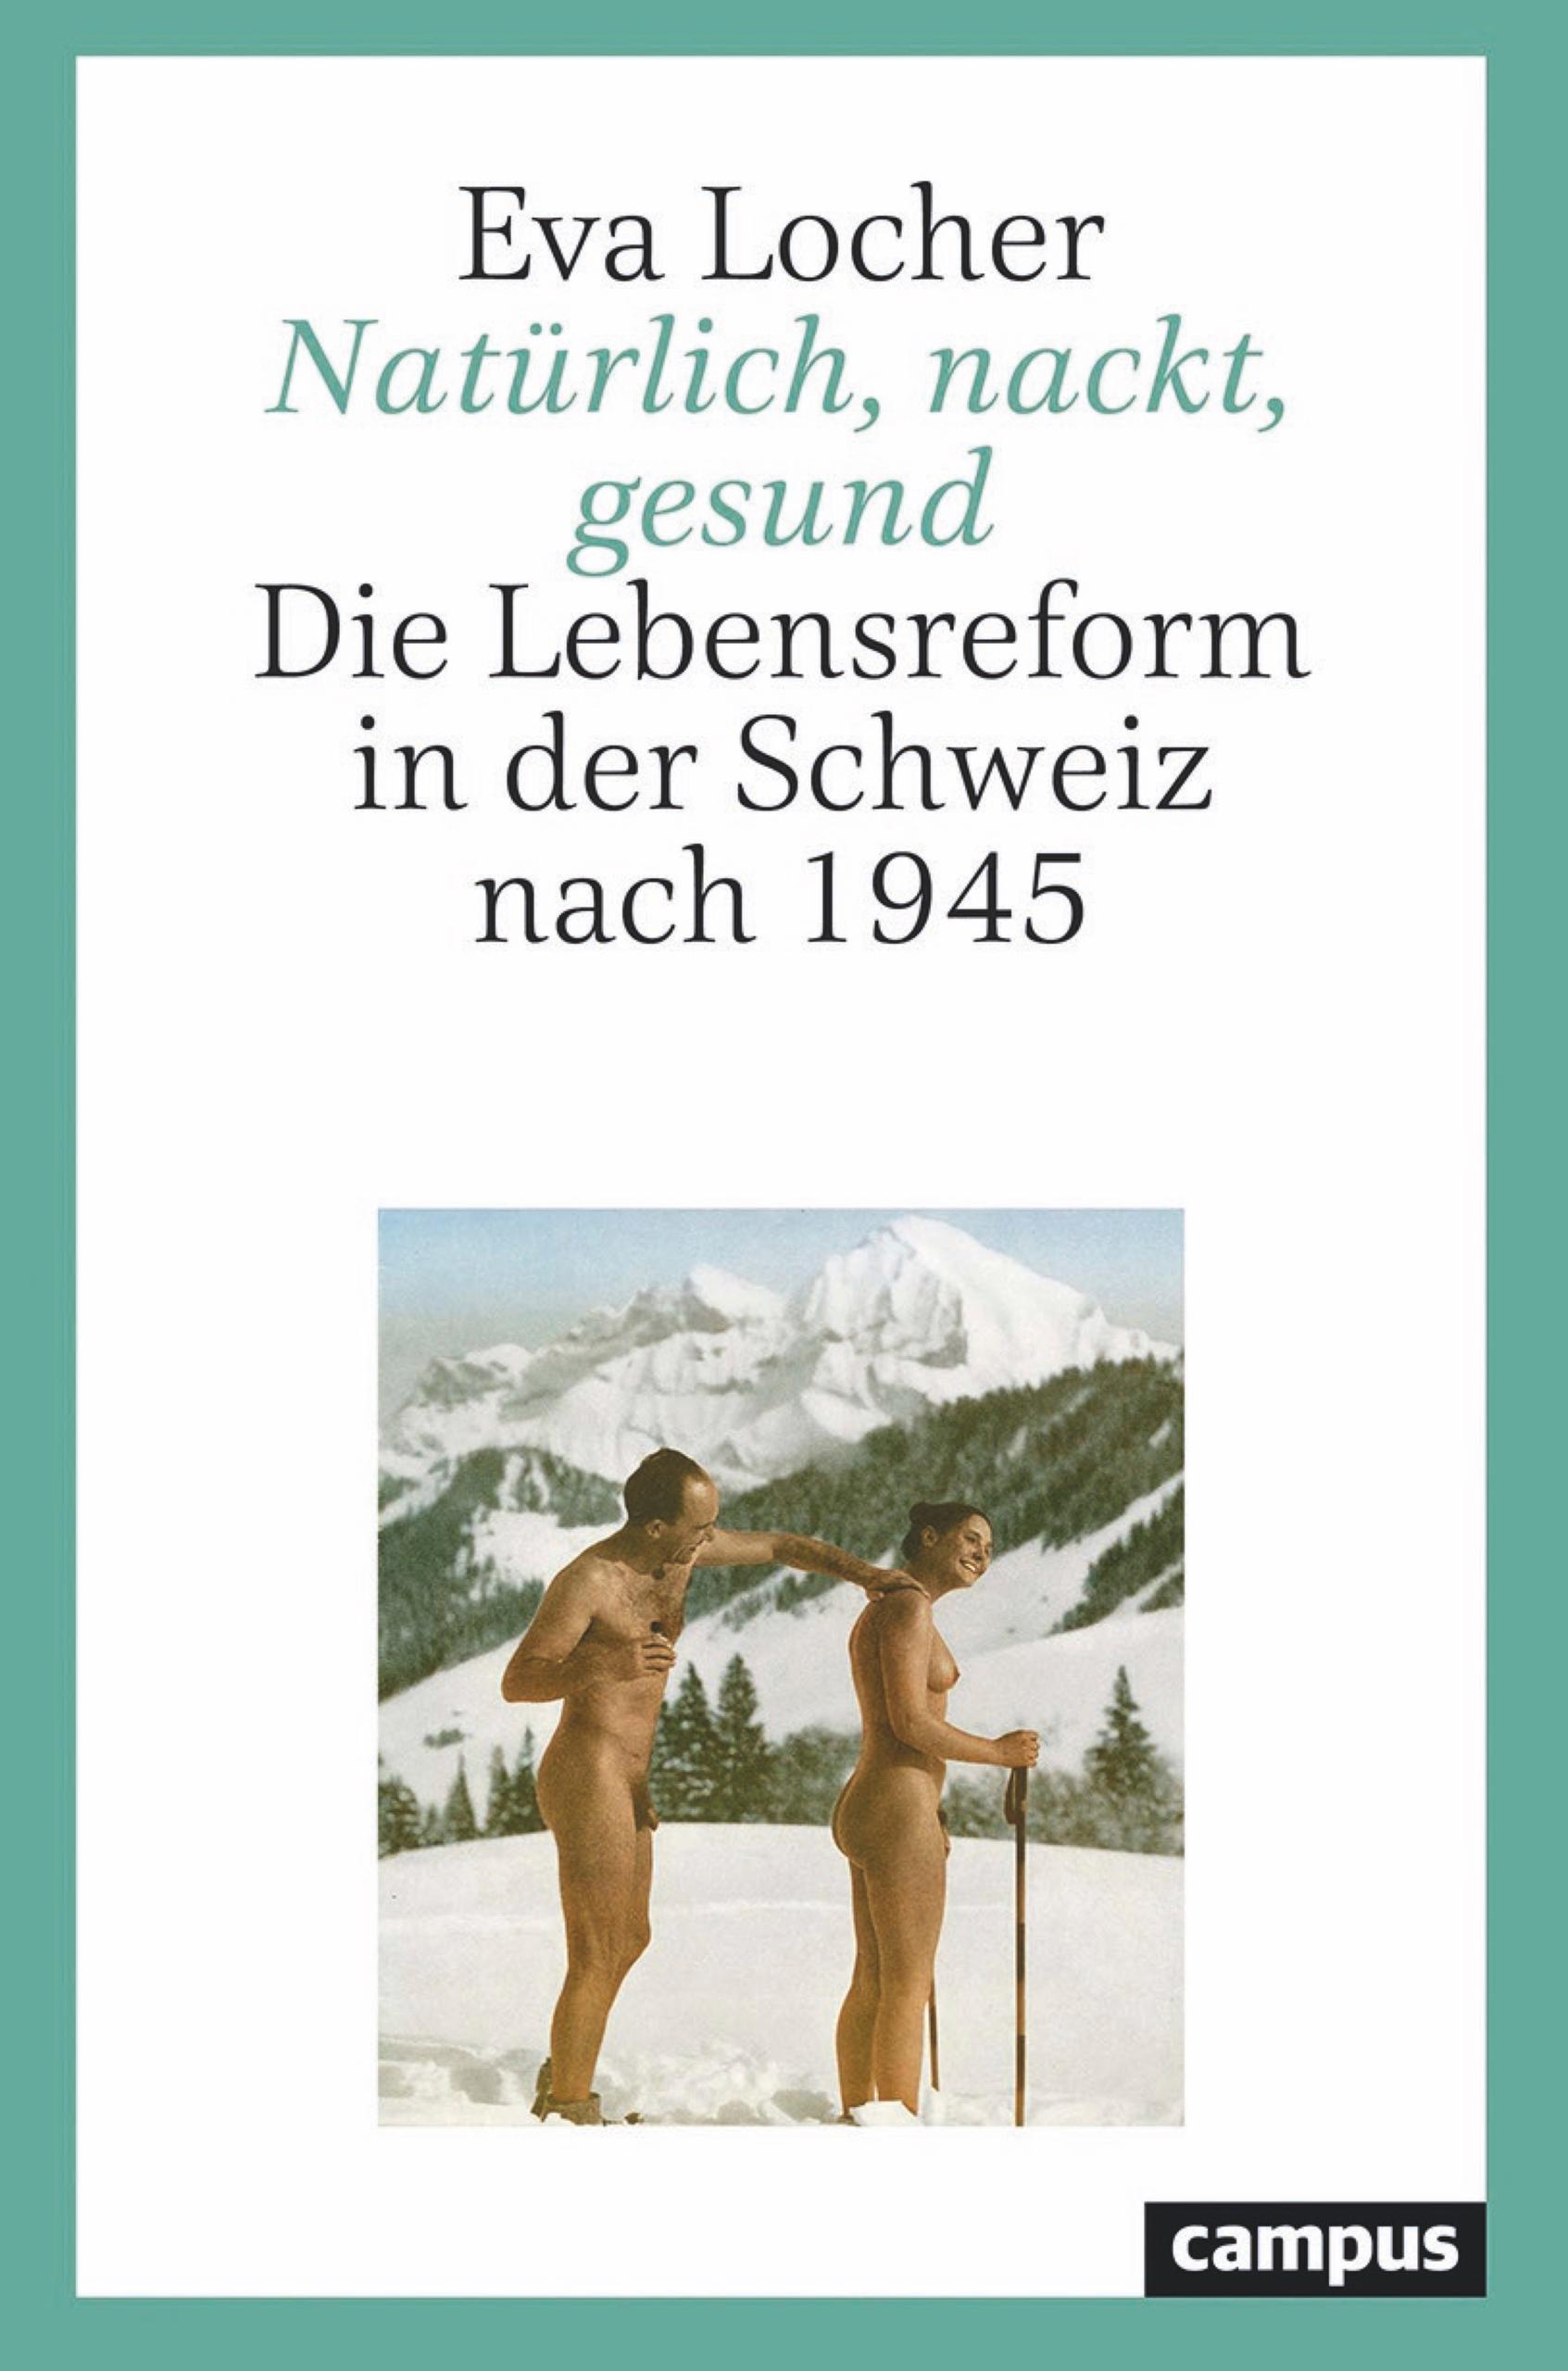 Cubierta del libro de Locher: se ve una pareja desnuda en un campo de esquí